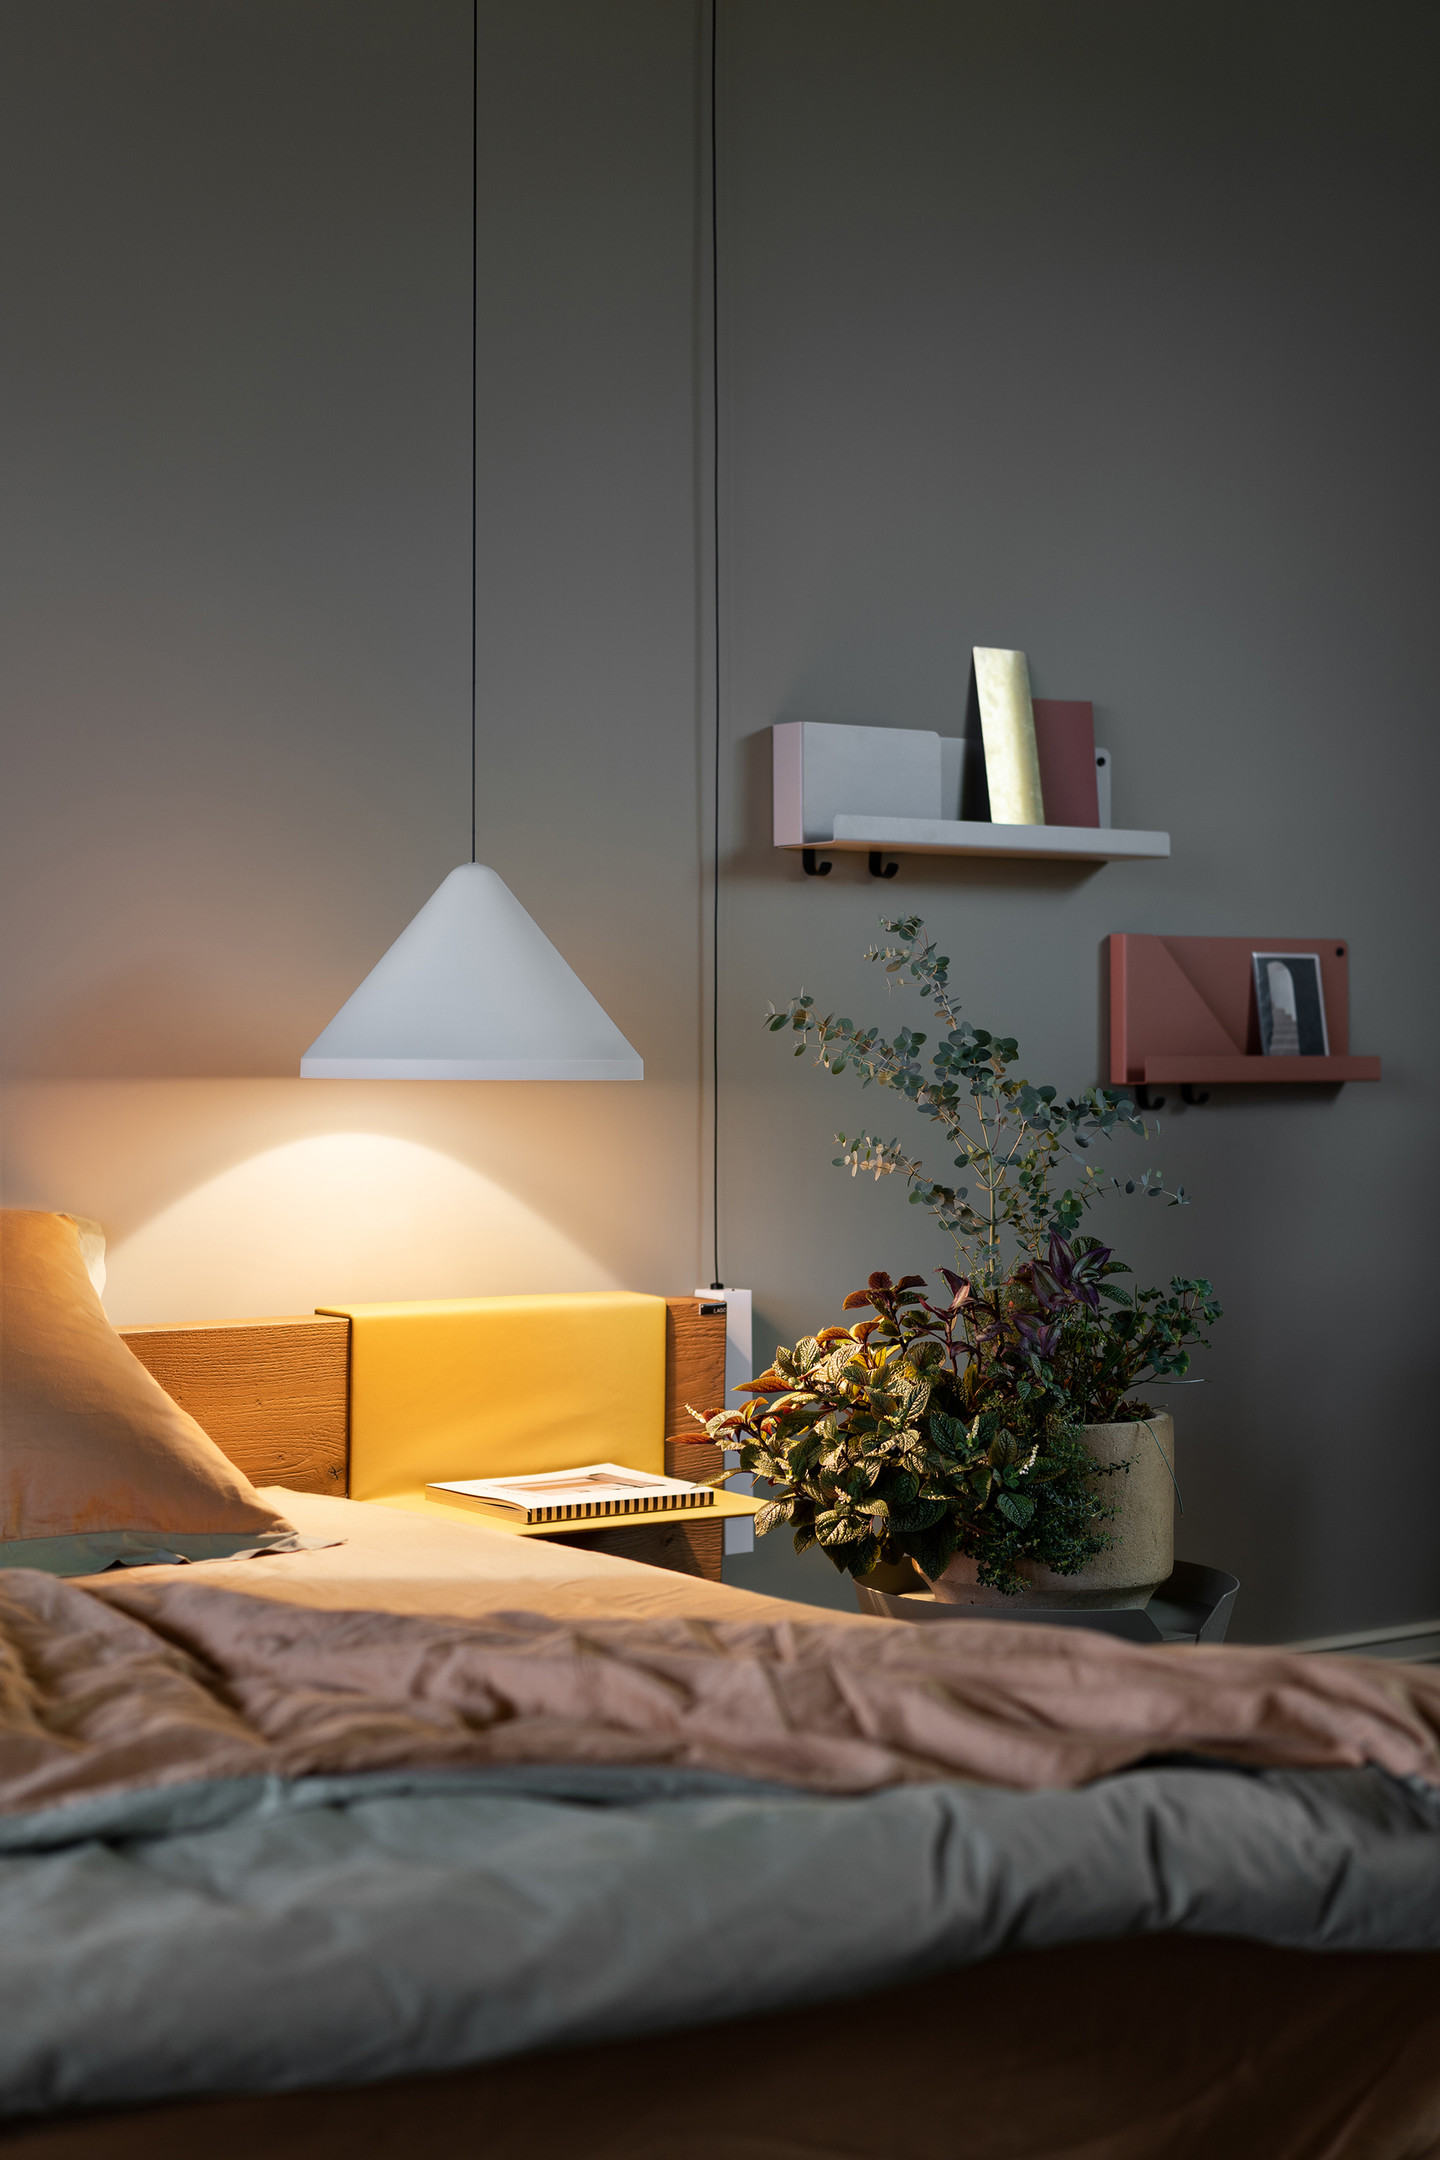 Phòng ngủ là không gian thư giãn, nghỉ ngơi cuối ngày, chính vì thế ánh sáng lựa chọn nên là ánh sáng vàng ấm. Chiếc đèn thả trần mảnh mai hình nón này thực sự là một lựa chọn tuyệt vời cho không gian ấm cúng.